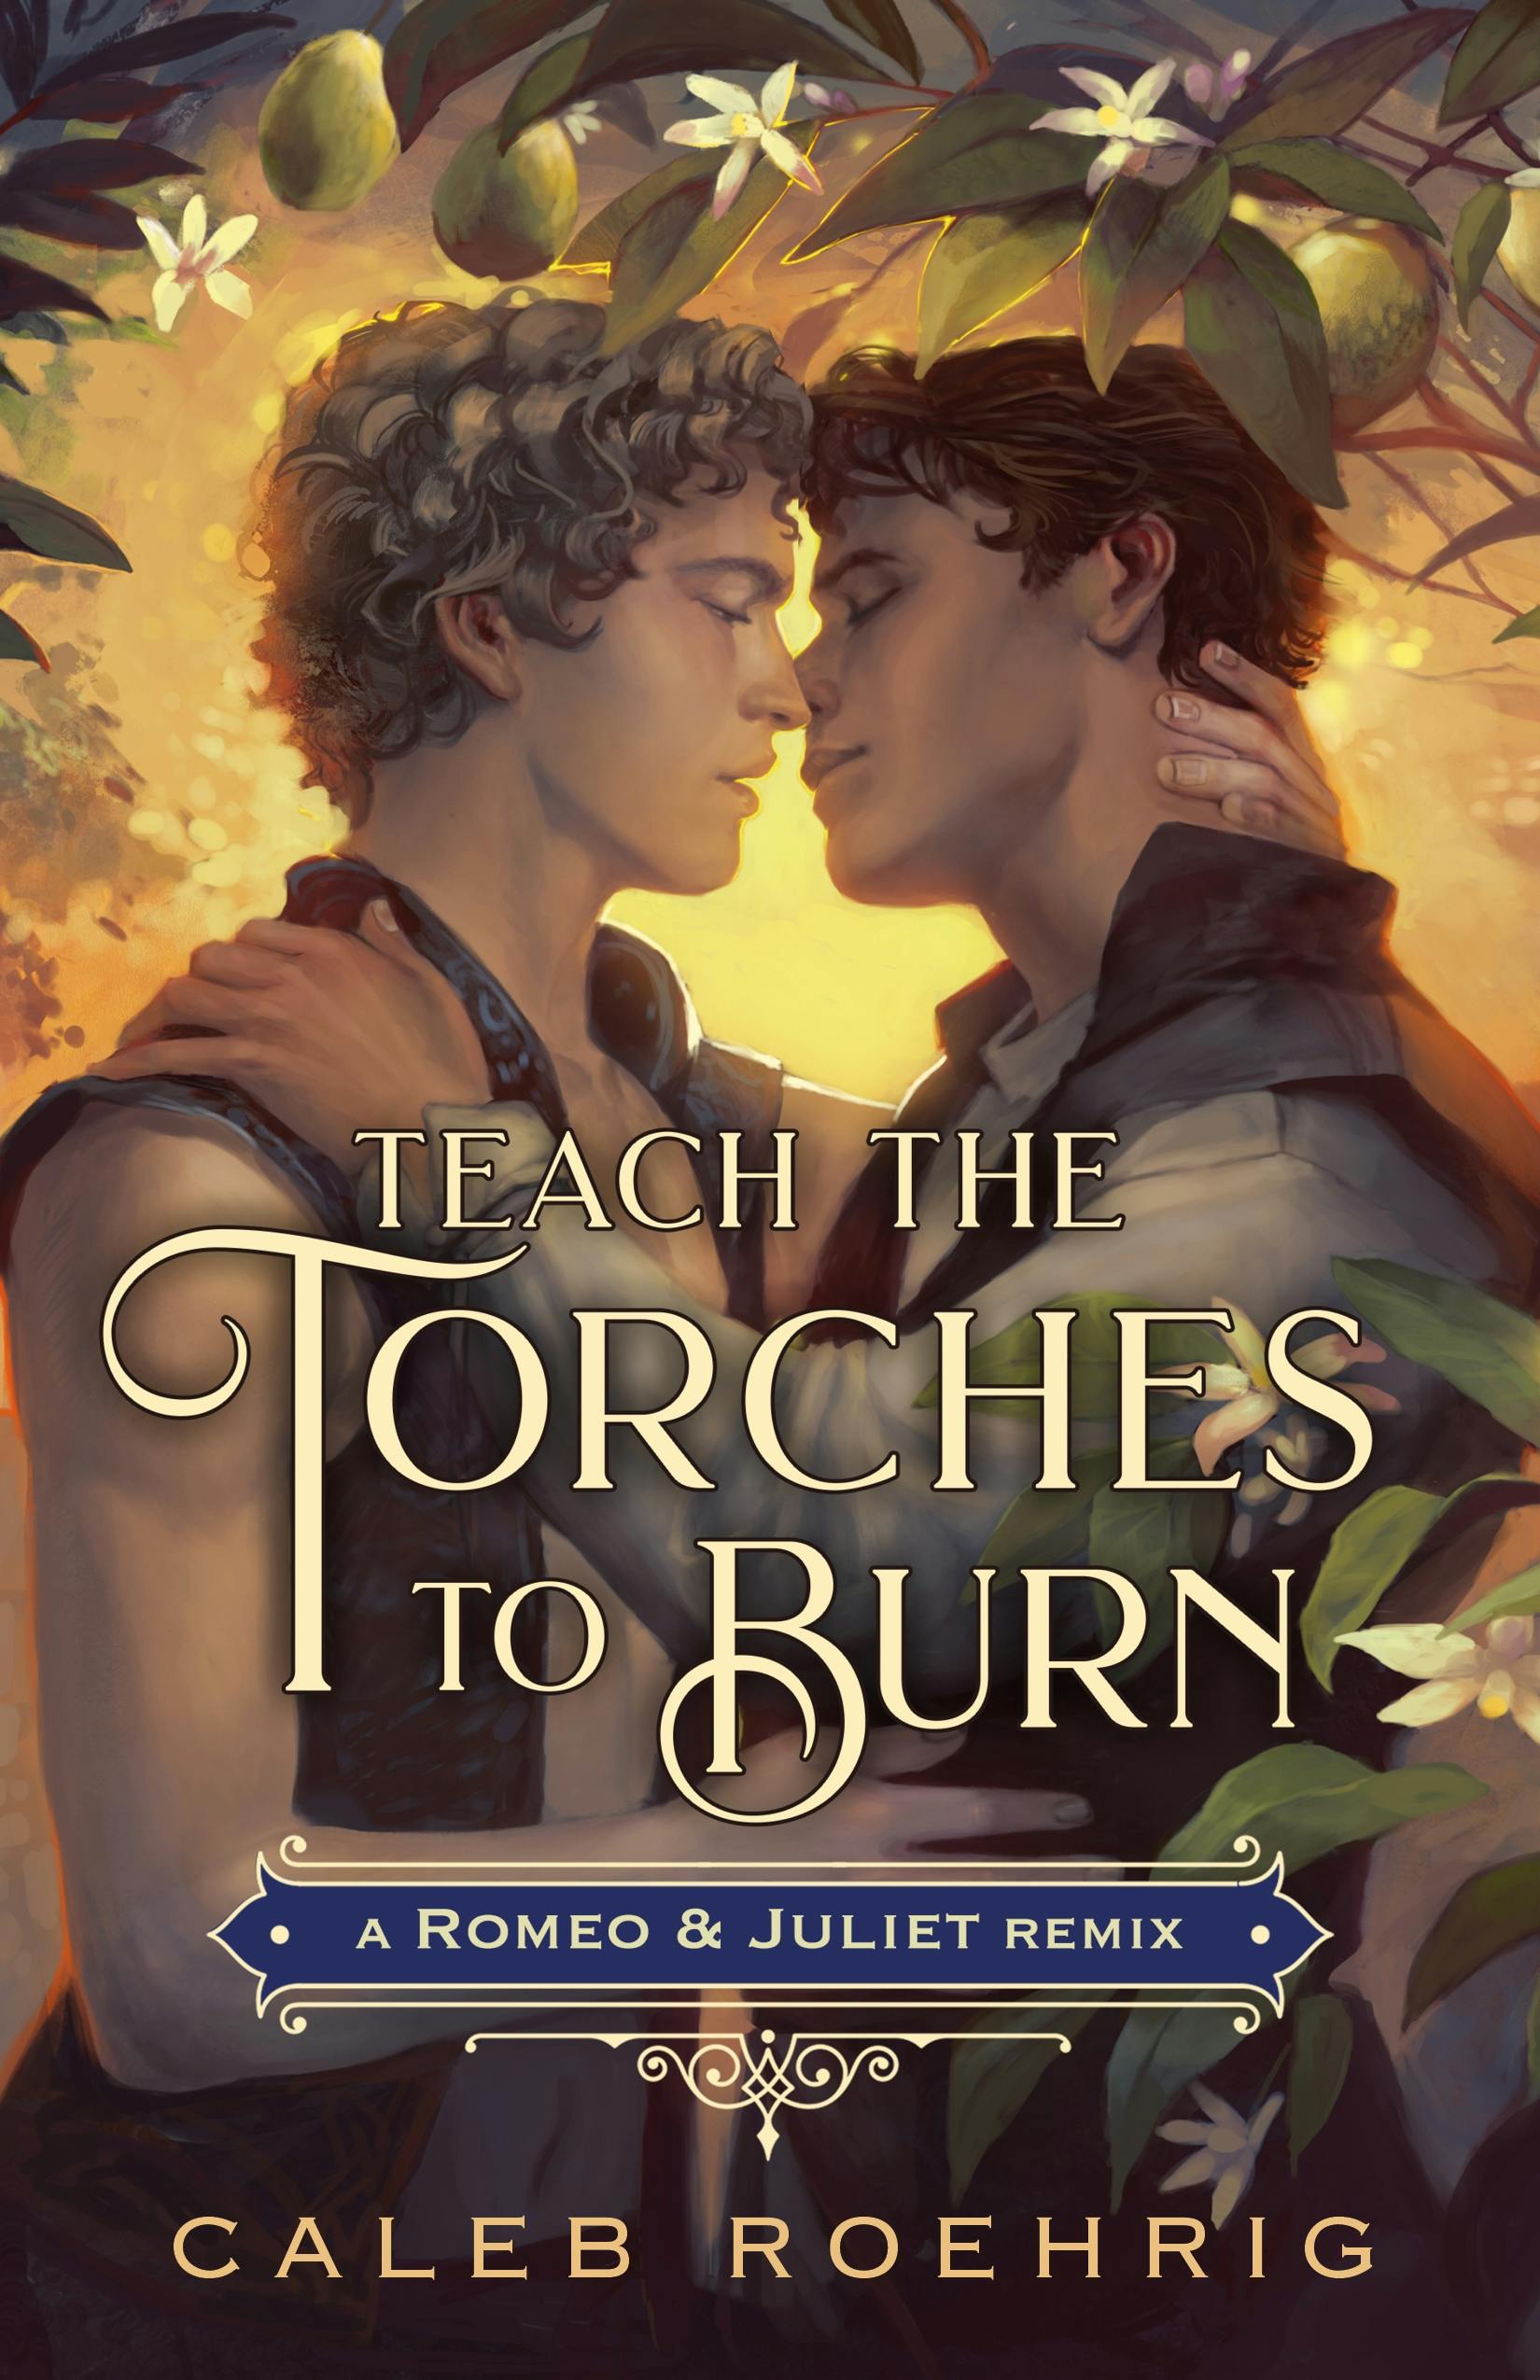 Teach the Torches to Burn: A Romeo u0026 Juliet Remix